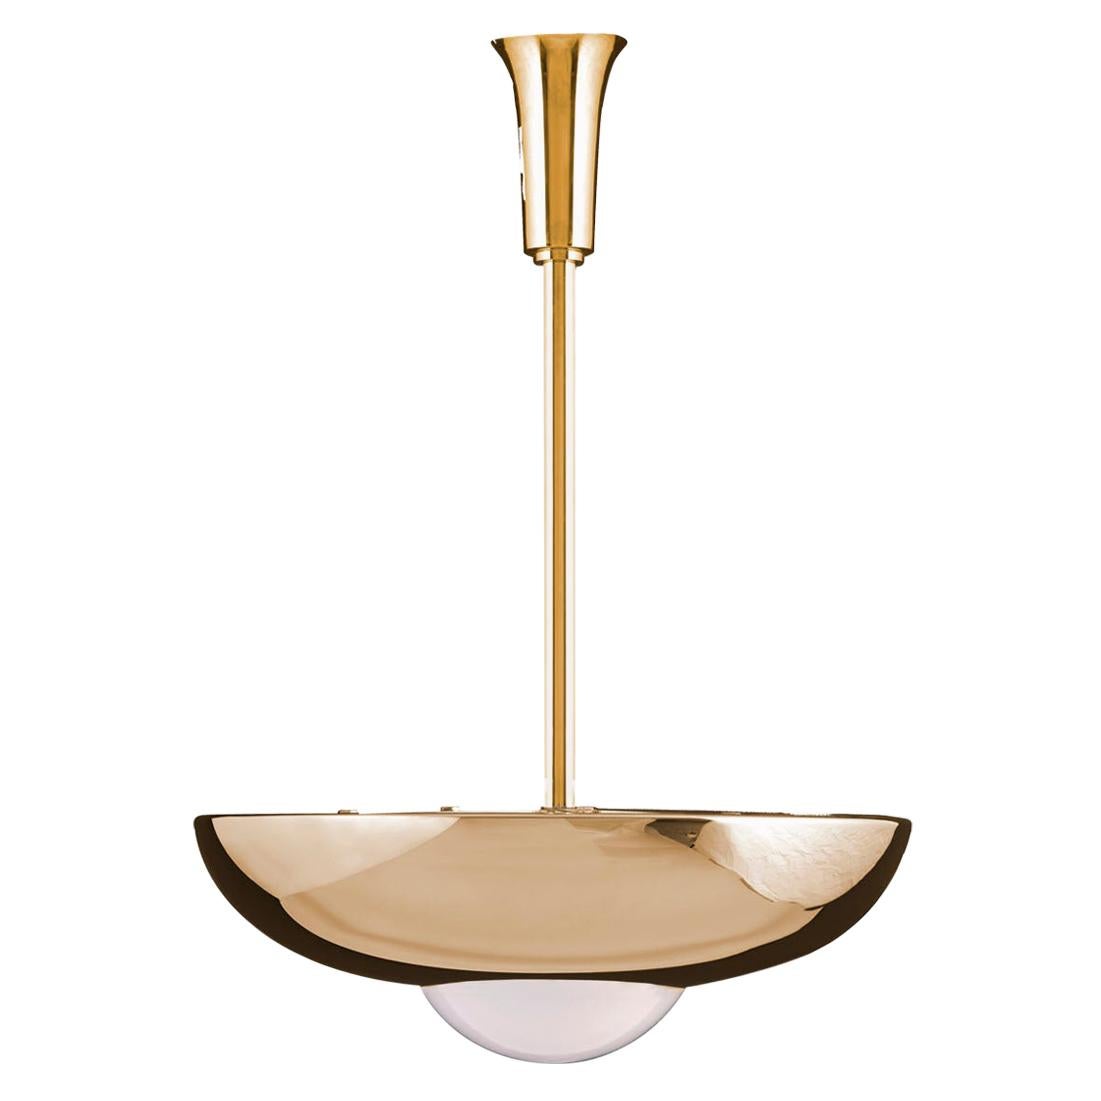 Bauhaus Art Deco Style Pendant Lamp "Zwadela" Chandelier Pendant, Re-Edition For Sale